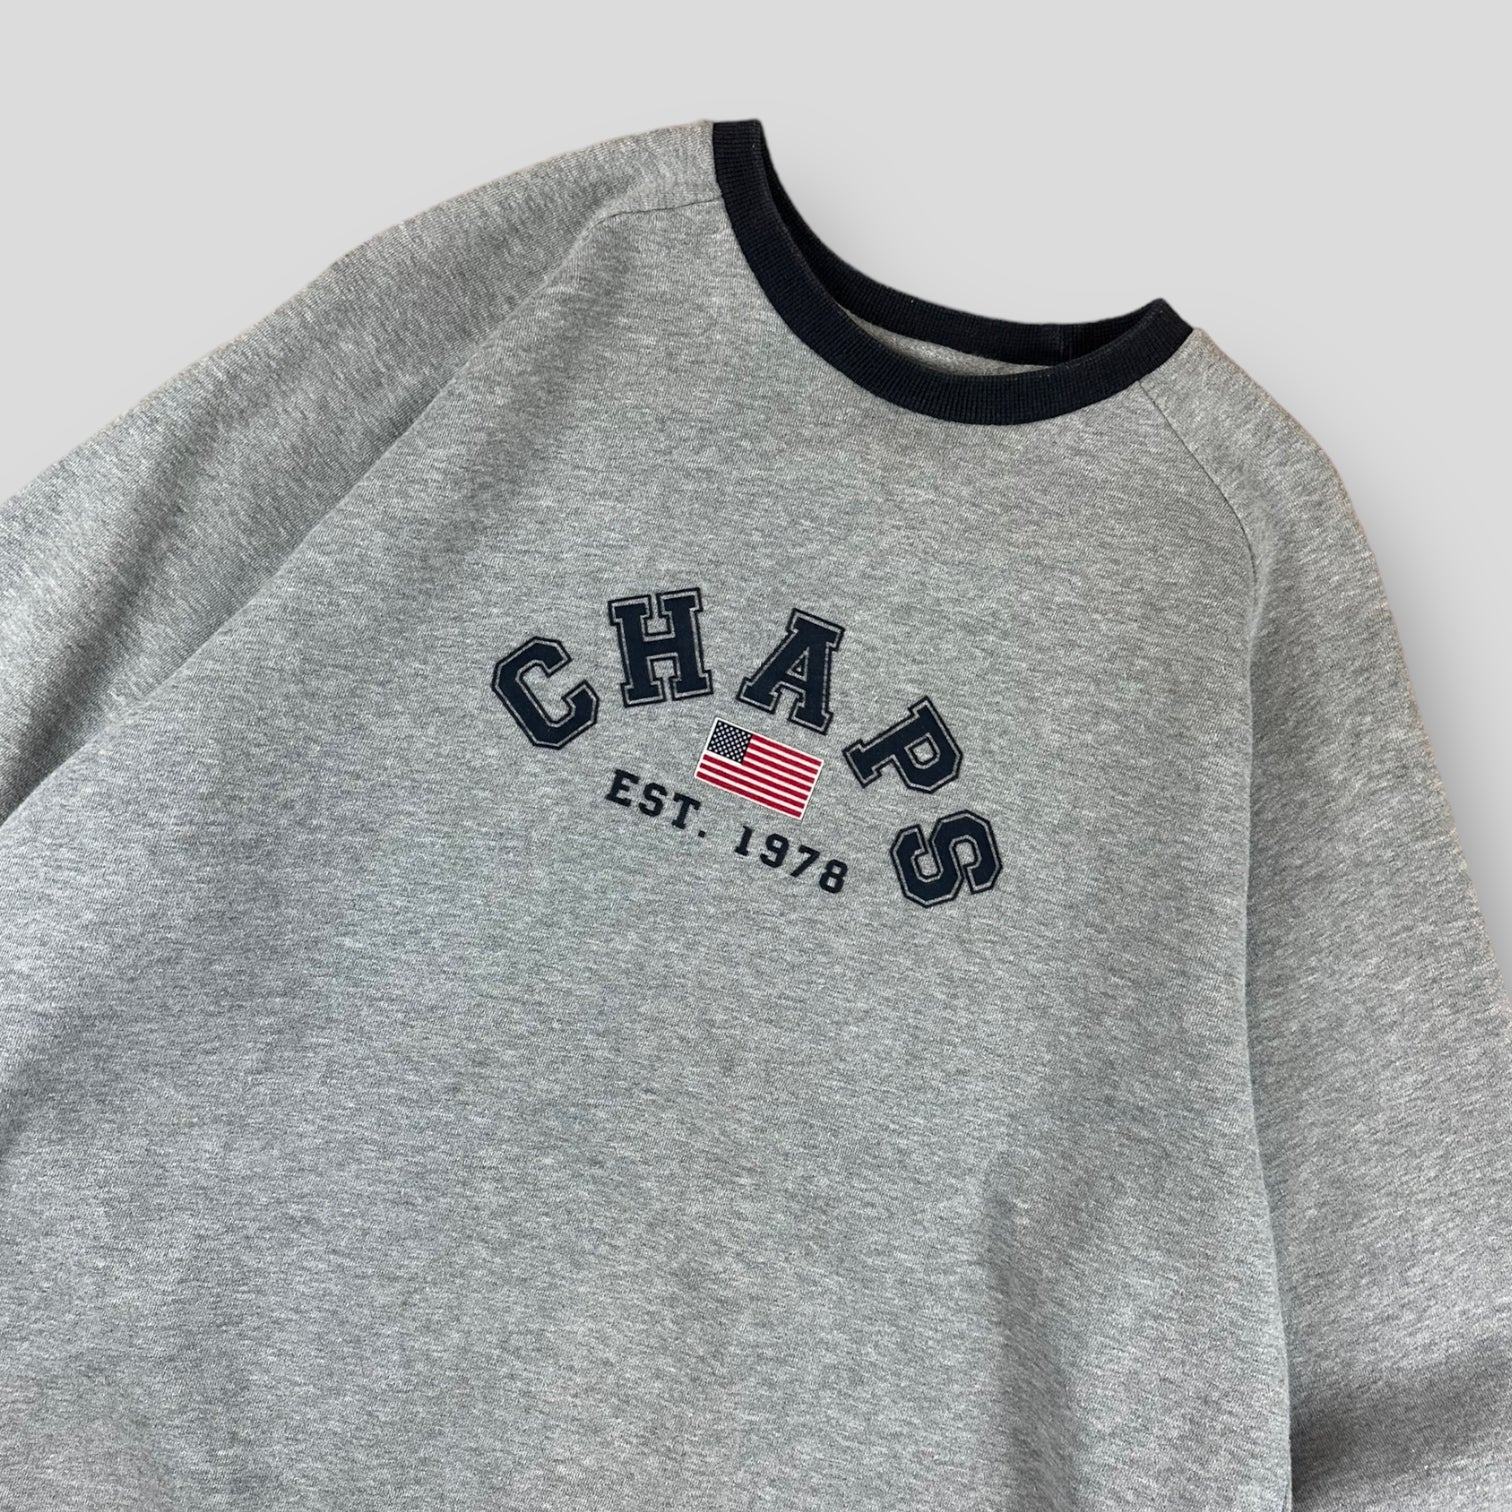 Chaps sweatshirt